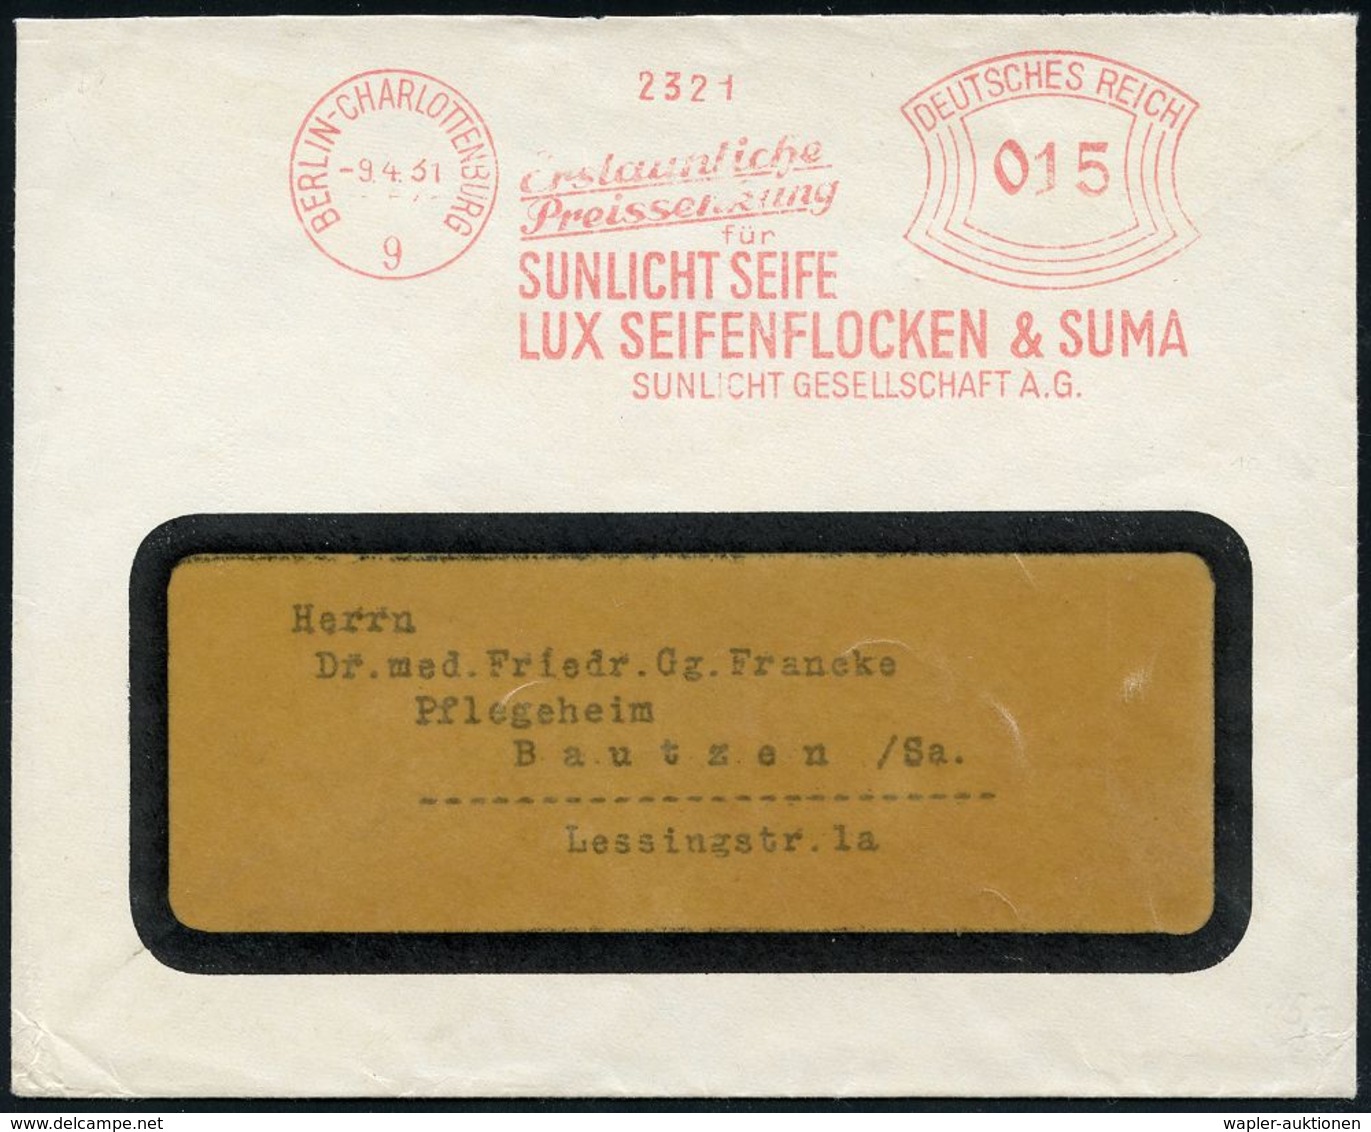 HYGIENE / KÖRPERPFLEGE : BERLIN-CHARLOTTENBURG/ 9/ ..Preissenkung/ Für/ SUNLICHT SEIFE/ LUX SEIFENFLOCKEN & SUMA/  SUN-L - Pharmacie